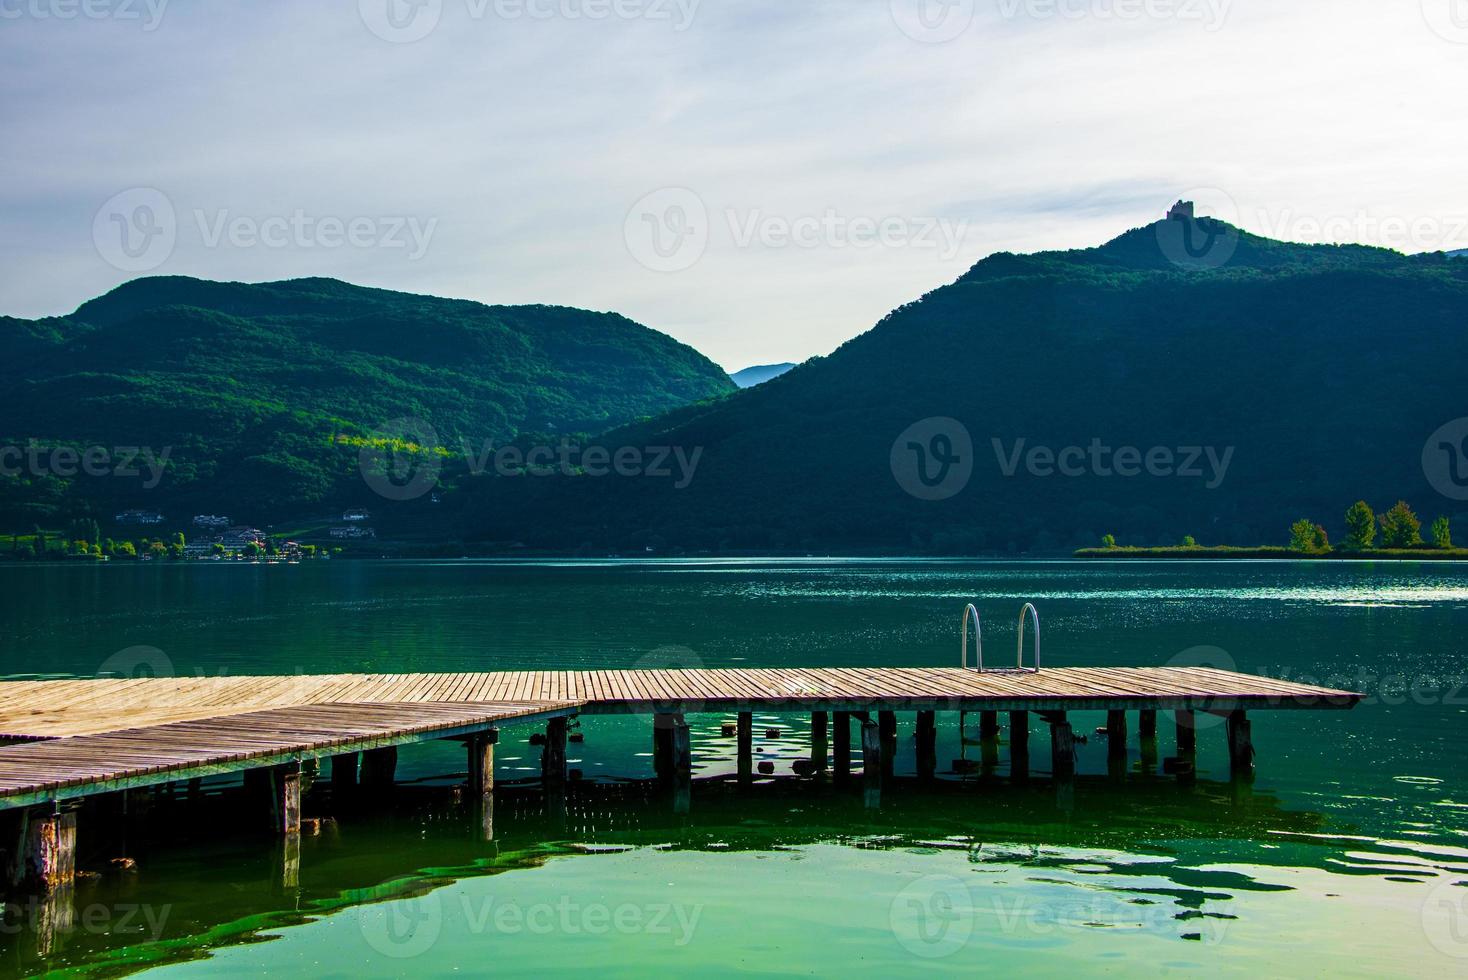 Piccolo molo in legno sul lago di Caldaro a Bolzano, Italia foto